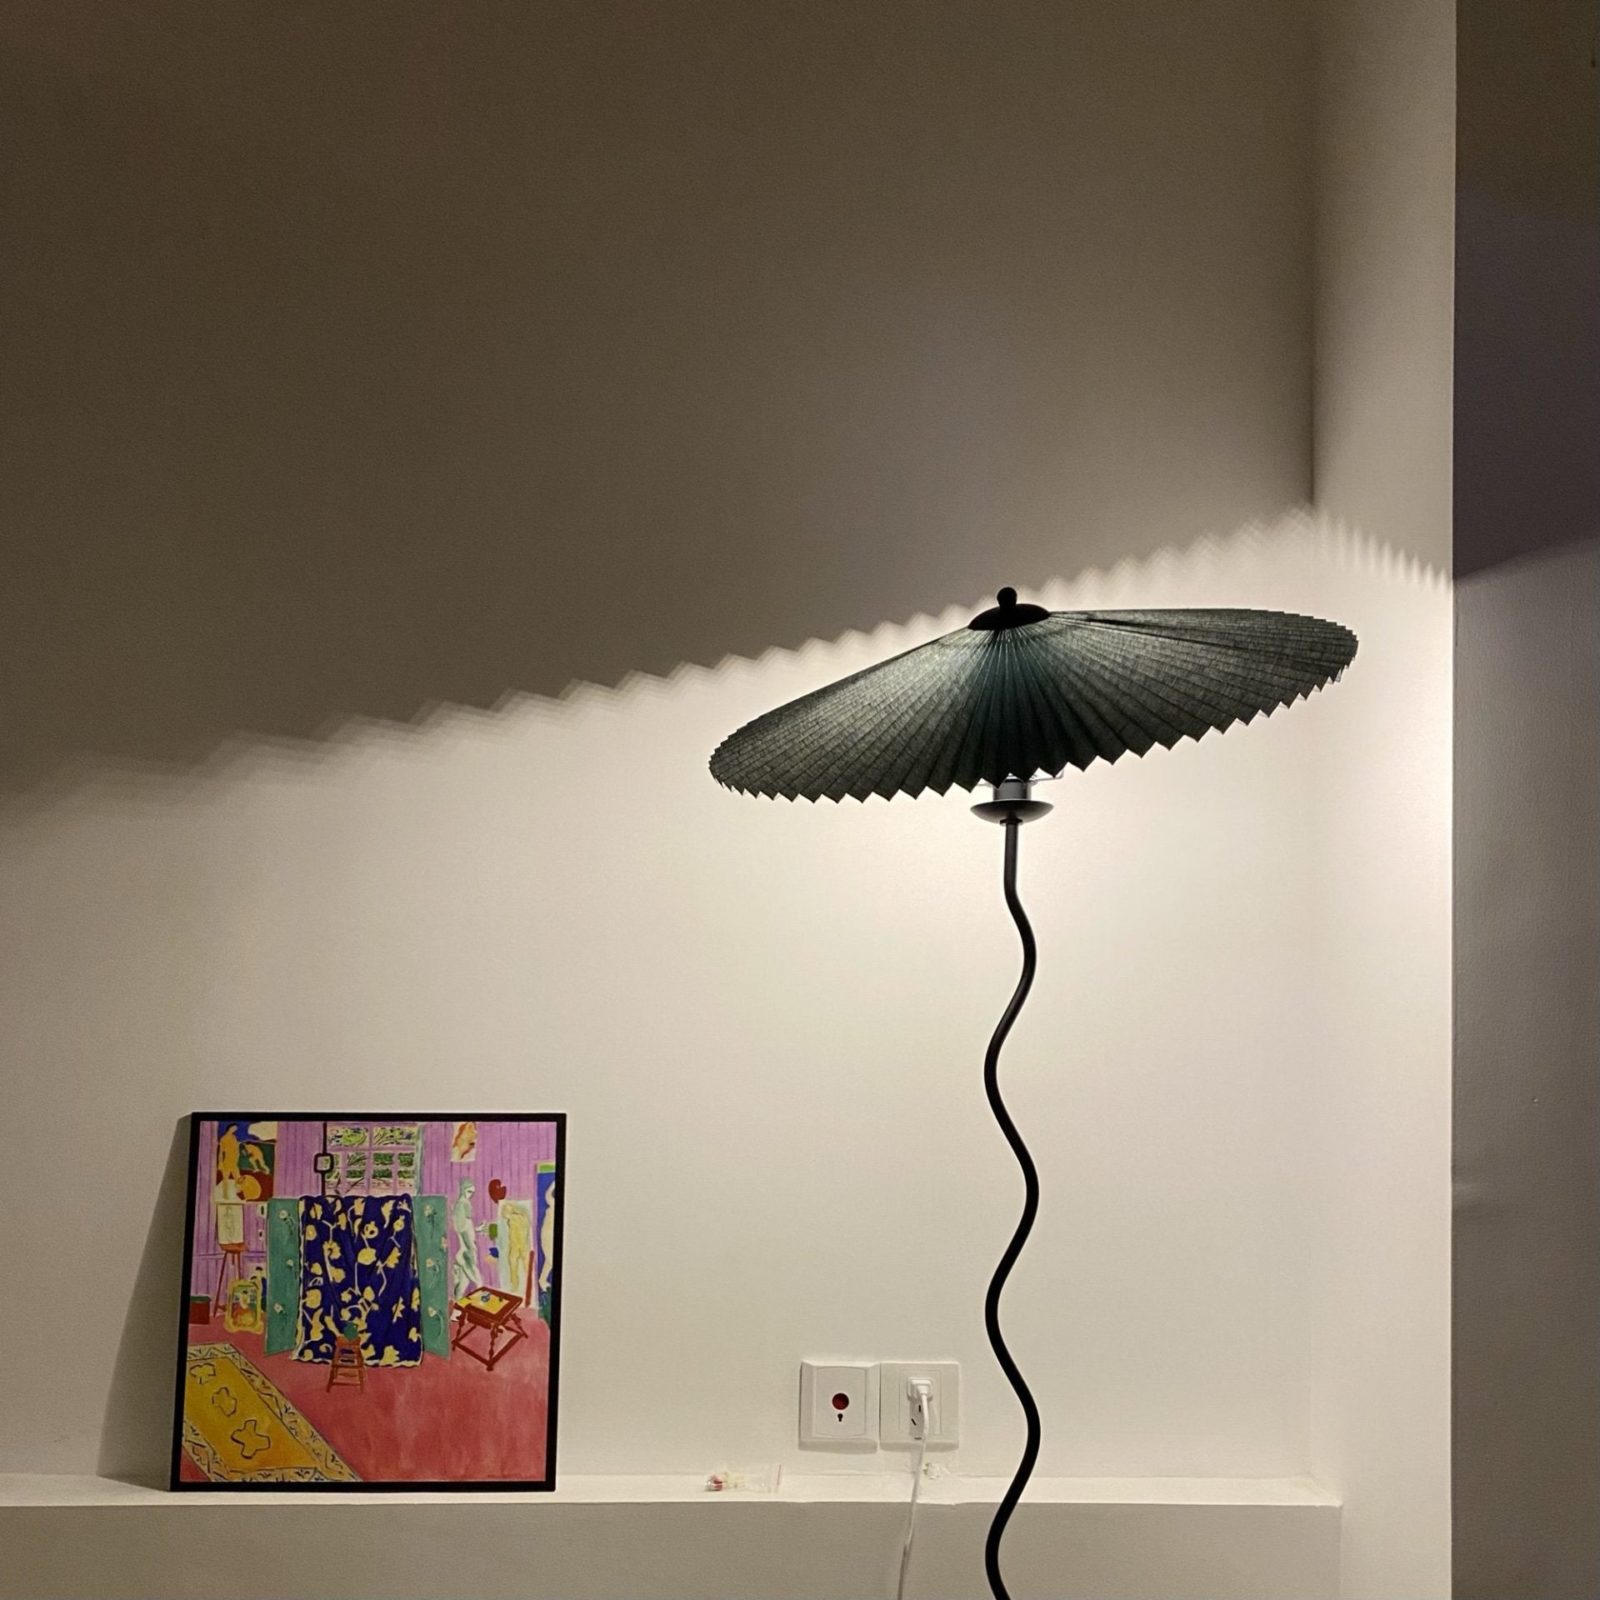 Squiggle Floor Lamp - Mooielight - Squiggle Floor Lamp